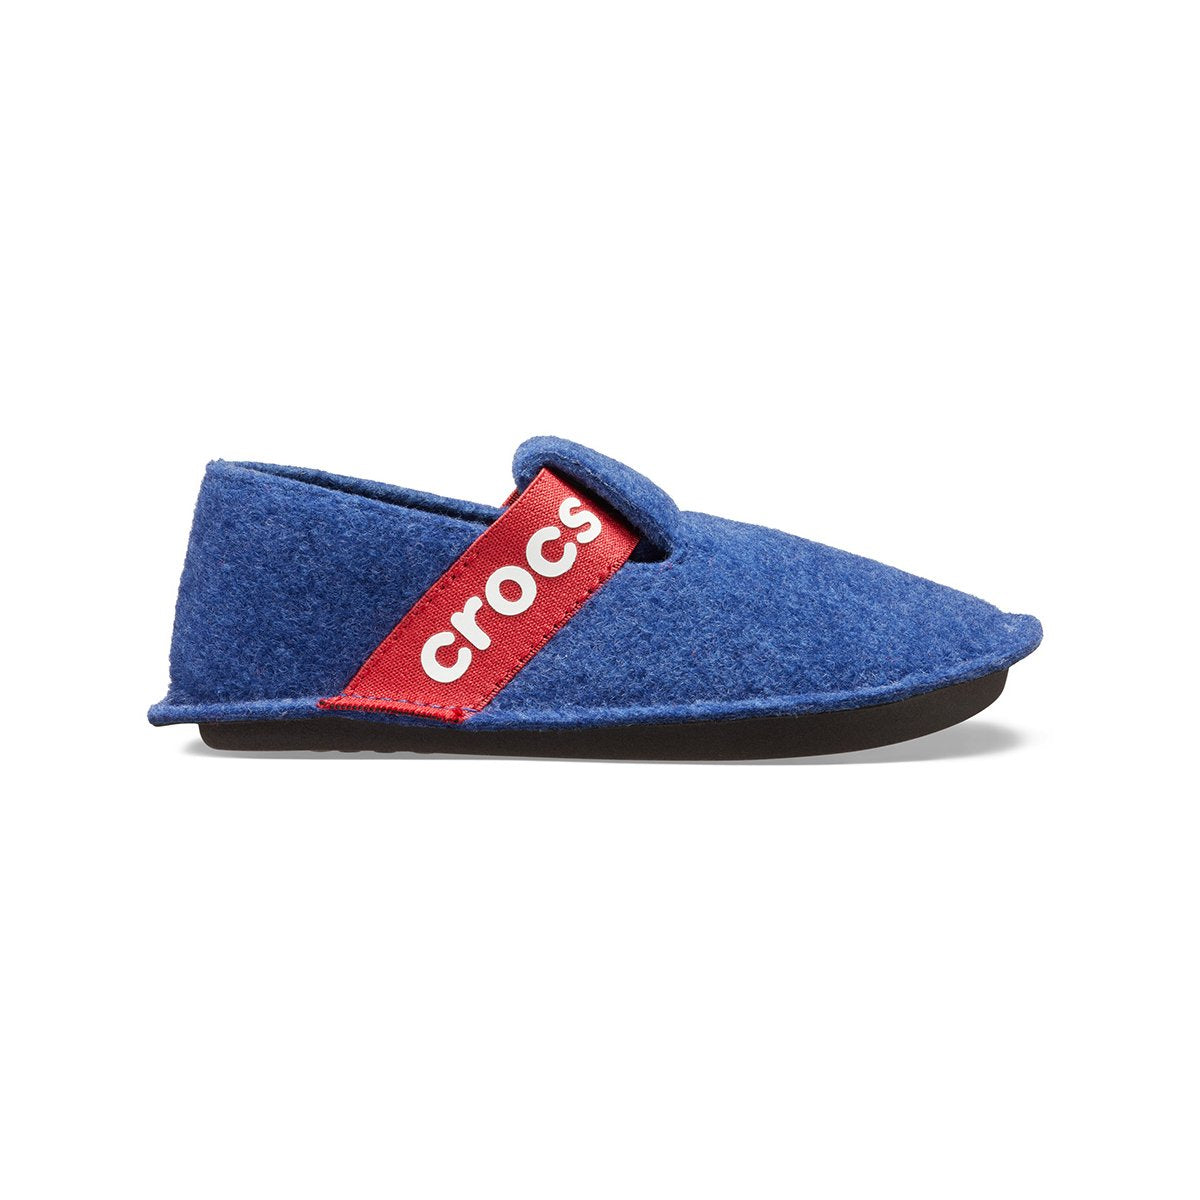 Crocs Classic Slipper K 205349 4O5 cerulean blue